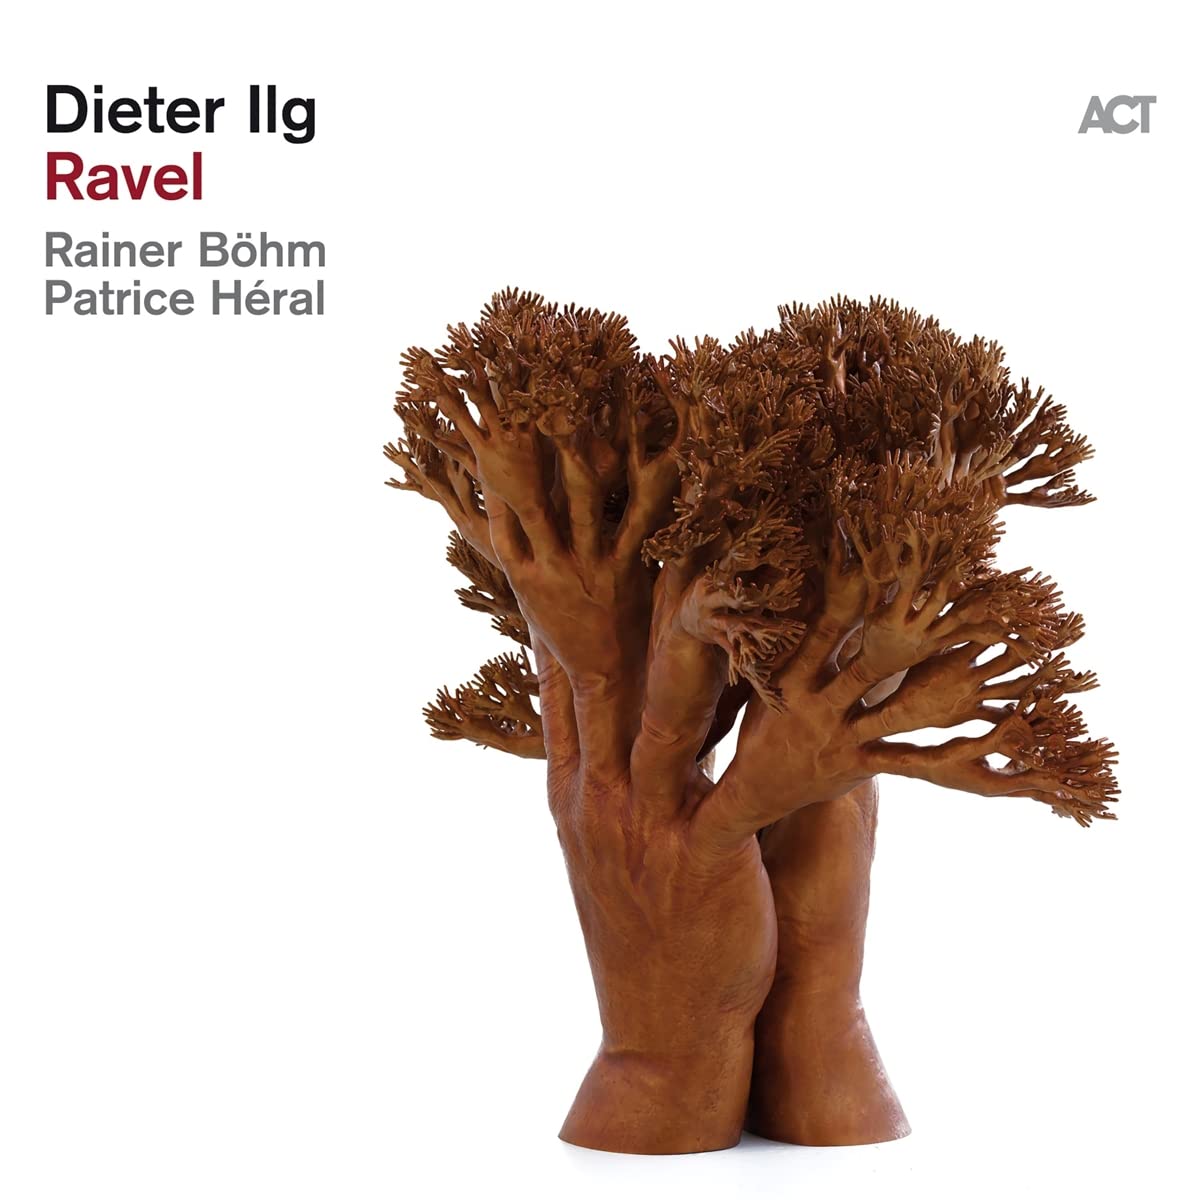 DIETER ILG - Ravel cover 